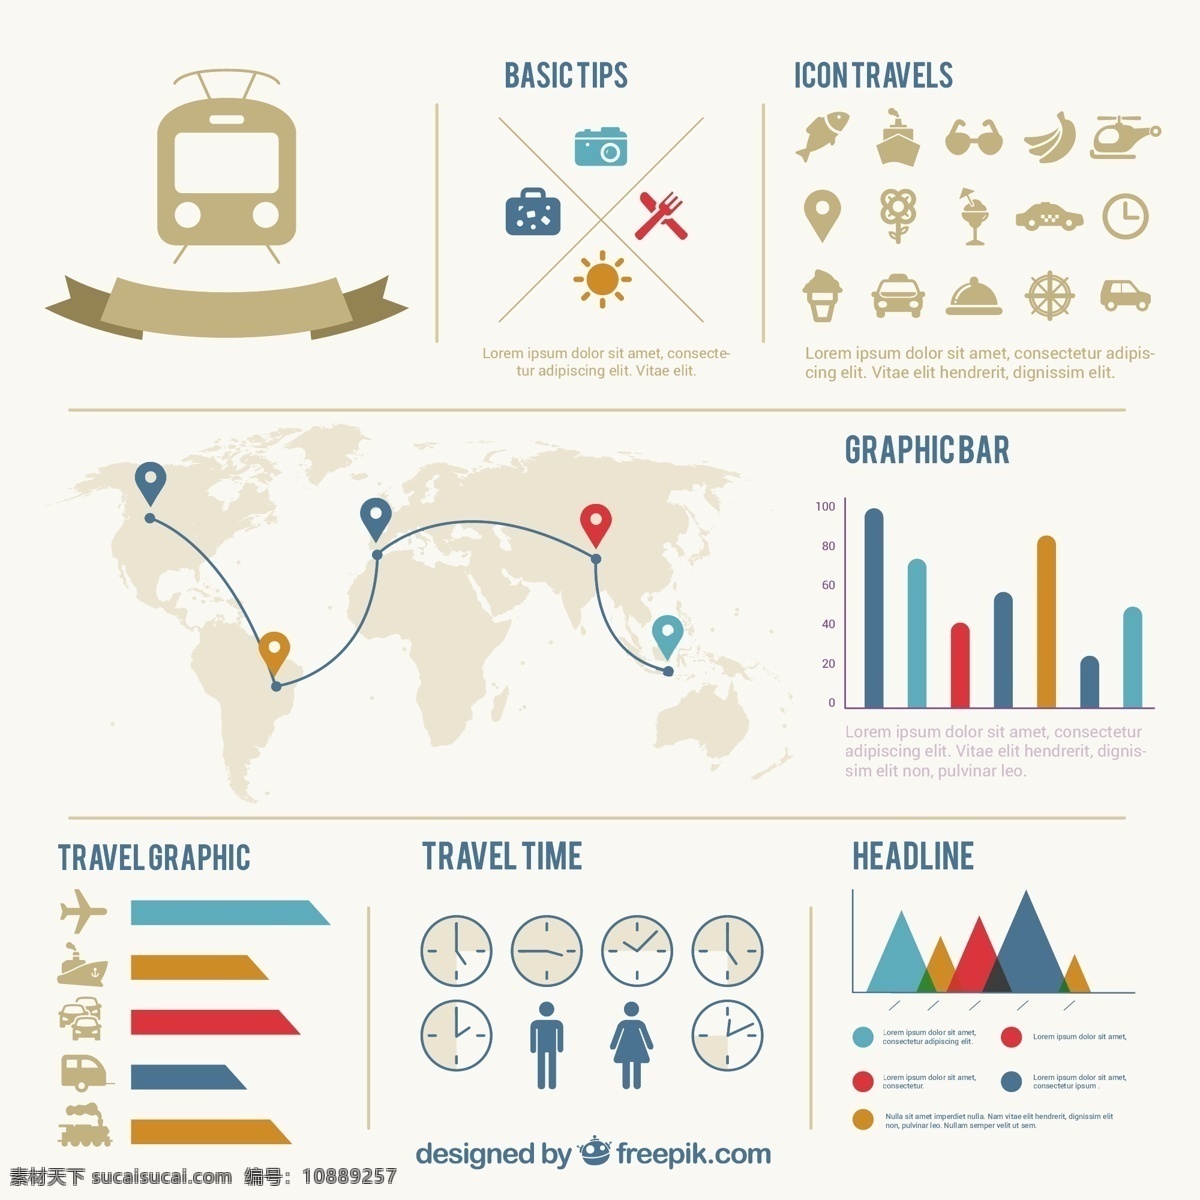 旅游信息图表 图表 旅行 图标 模板 图形 火车 图 交通 旅游 信息 条形图 棒图 白色